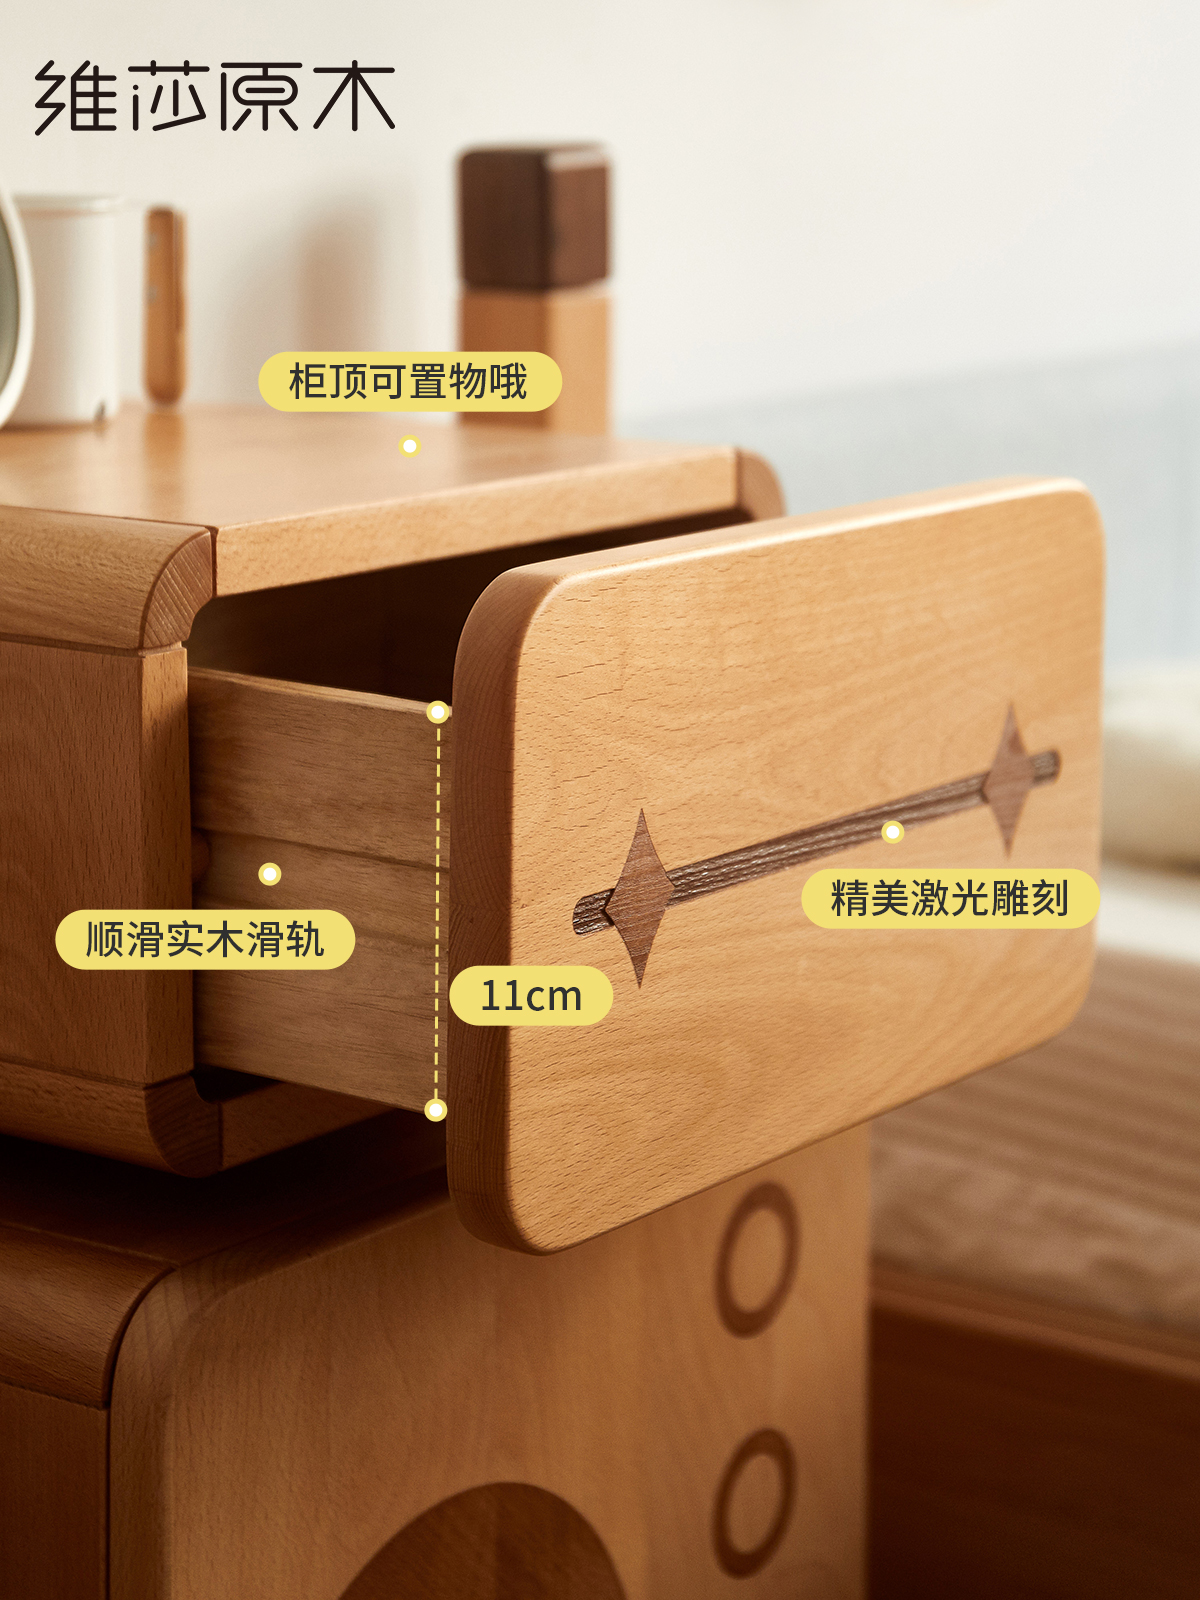 維莎實木兒童床頭櫃簡約現代風格橡木材質單門設計提供儲藏功能適用於兒童房